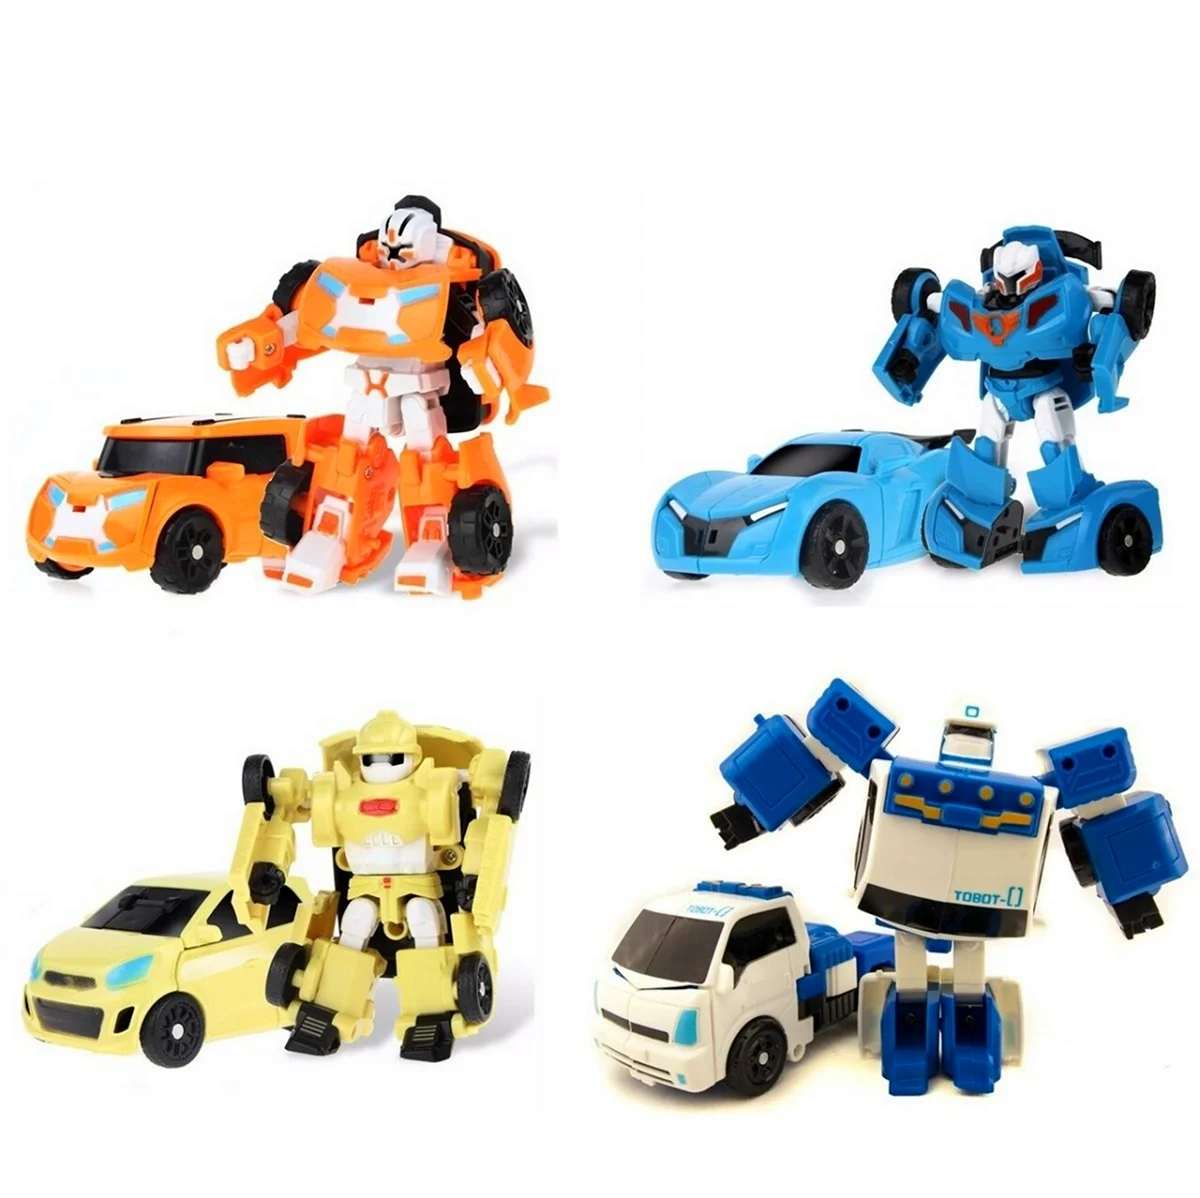 Роботы трансформеры Тоботы игрушки. Картинка из мультфильма